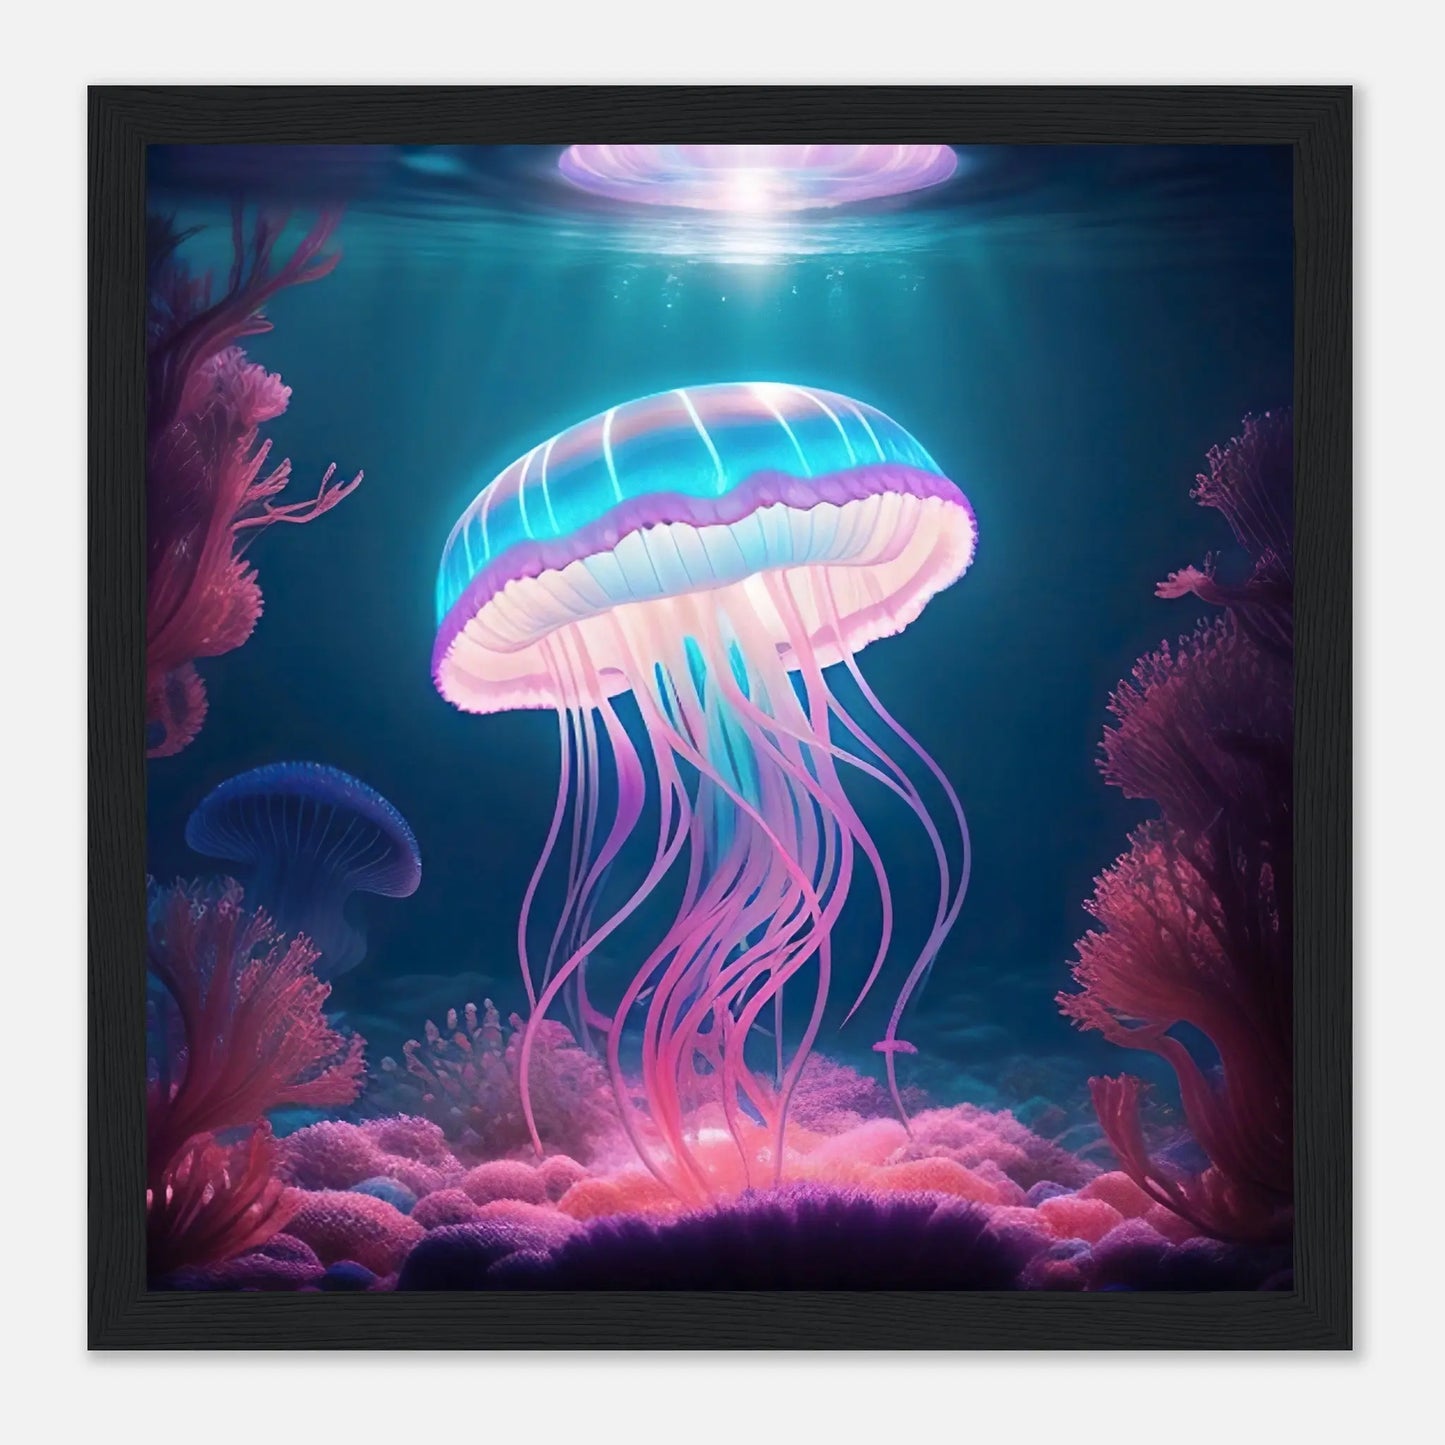 Gerahmtes Premium-Poster - Qualle - Digitaler Stil, KI-Kunst - RolConArt, Unterwasserlandschaften, 30x30-cm-12x12-Schwarzer-Rahmen